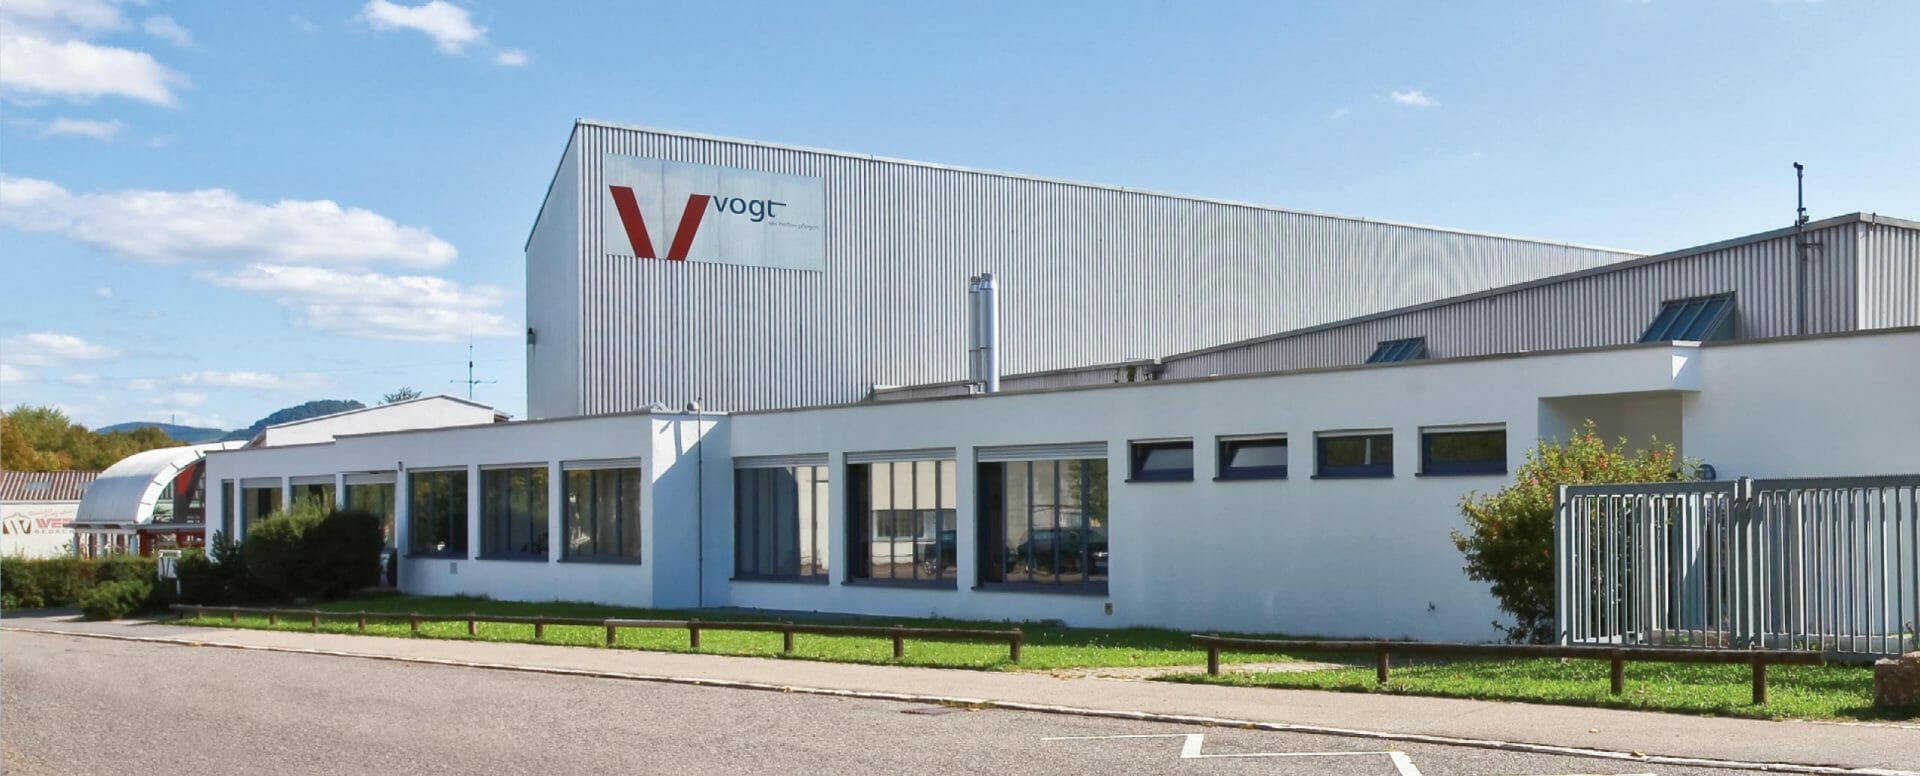 Filialbetrieb der Vogt GmbH in Reutlingen